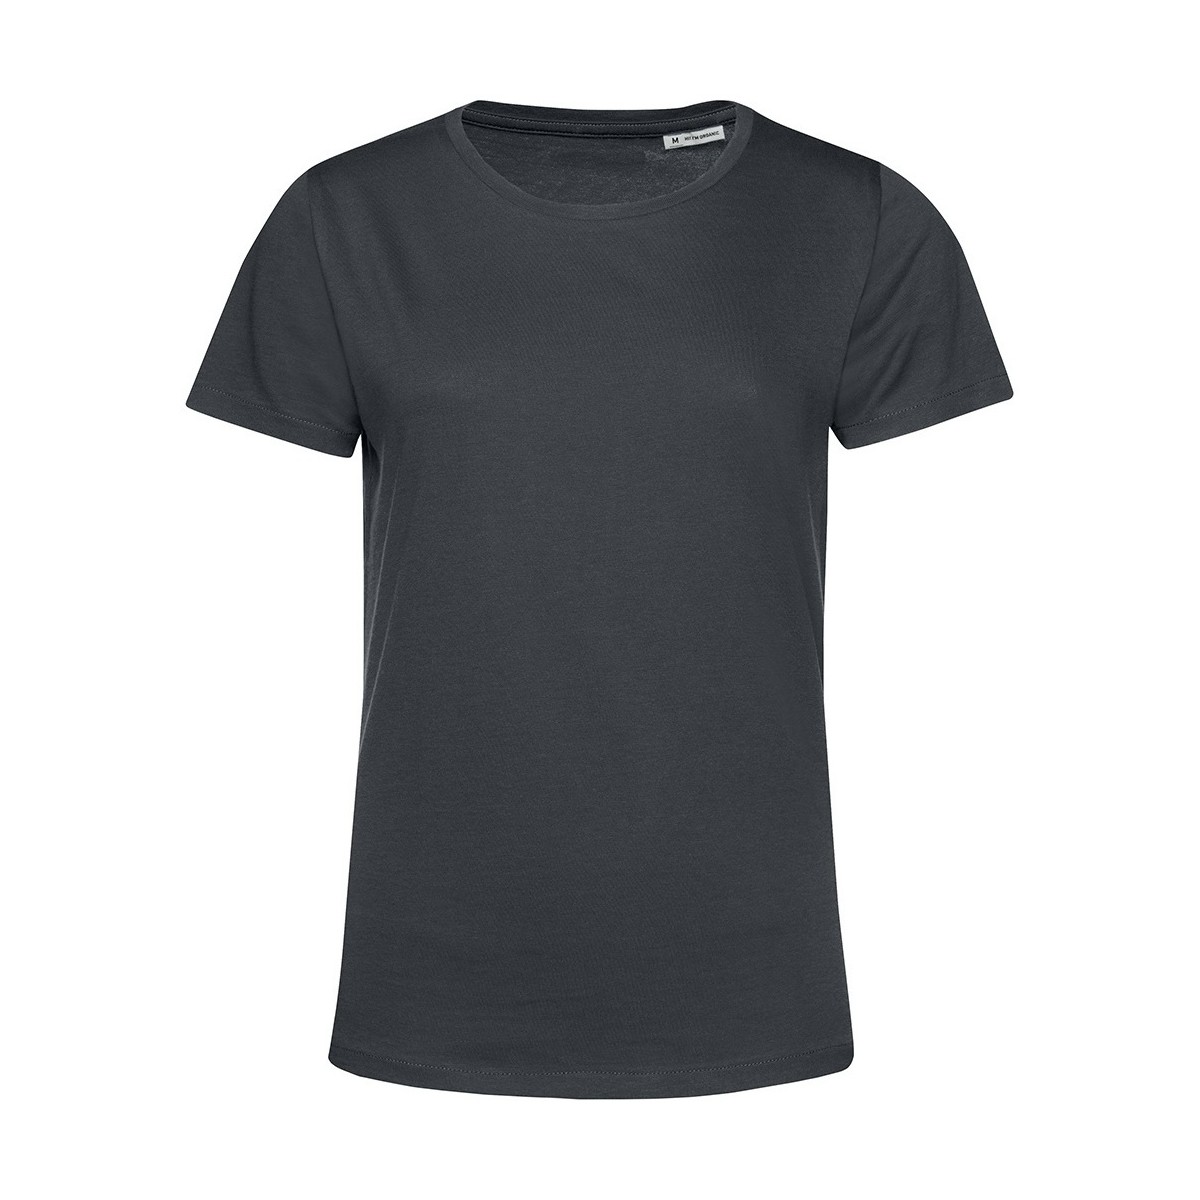 Vêtements Femme T-shirts manches courtes B&c E150 Multicolore